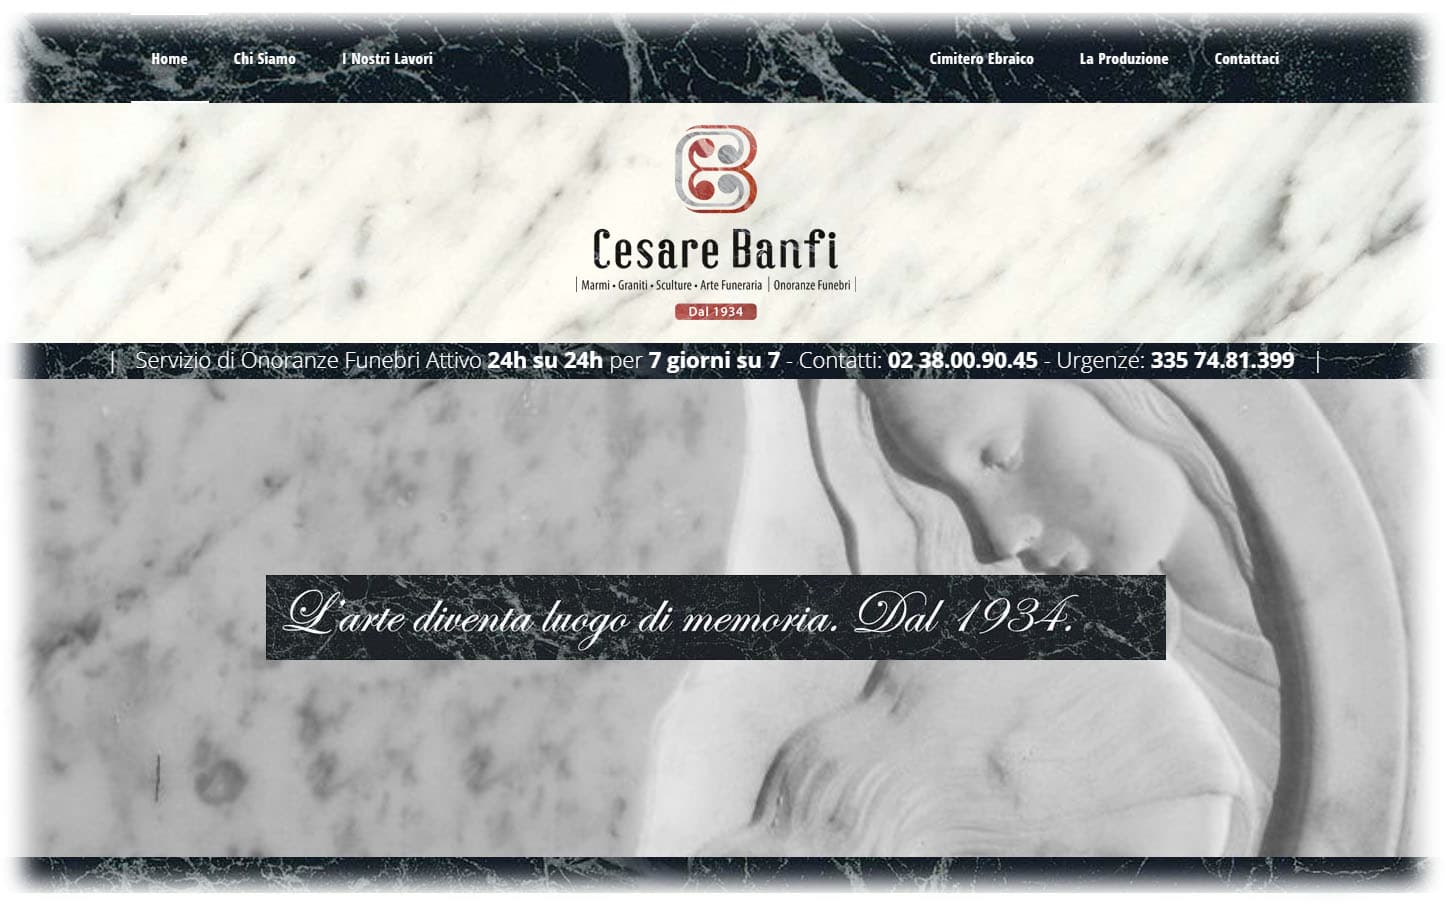 Banfi Cesare - Un sito web per Attività di Onoranze Funebri